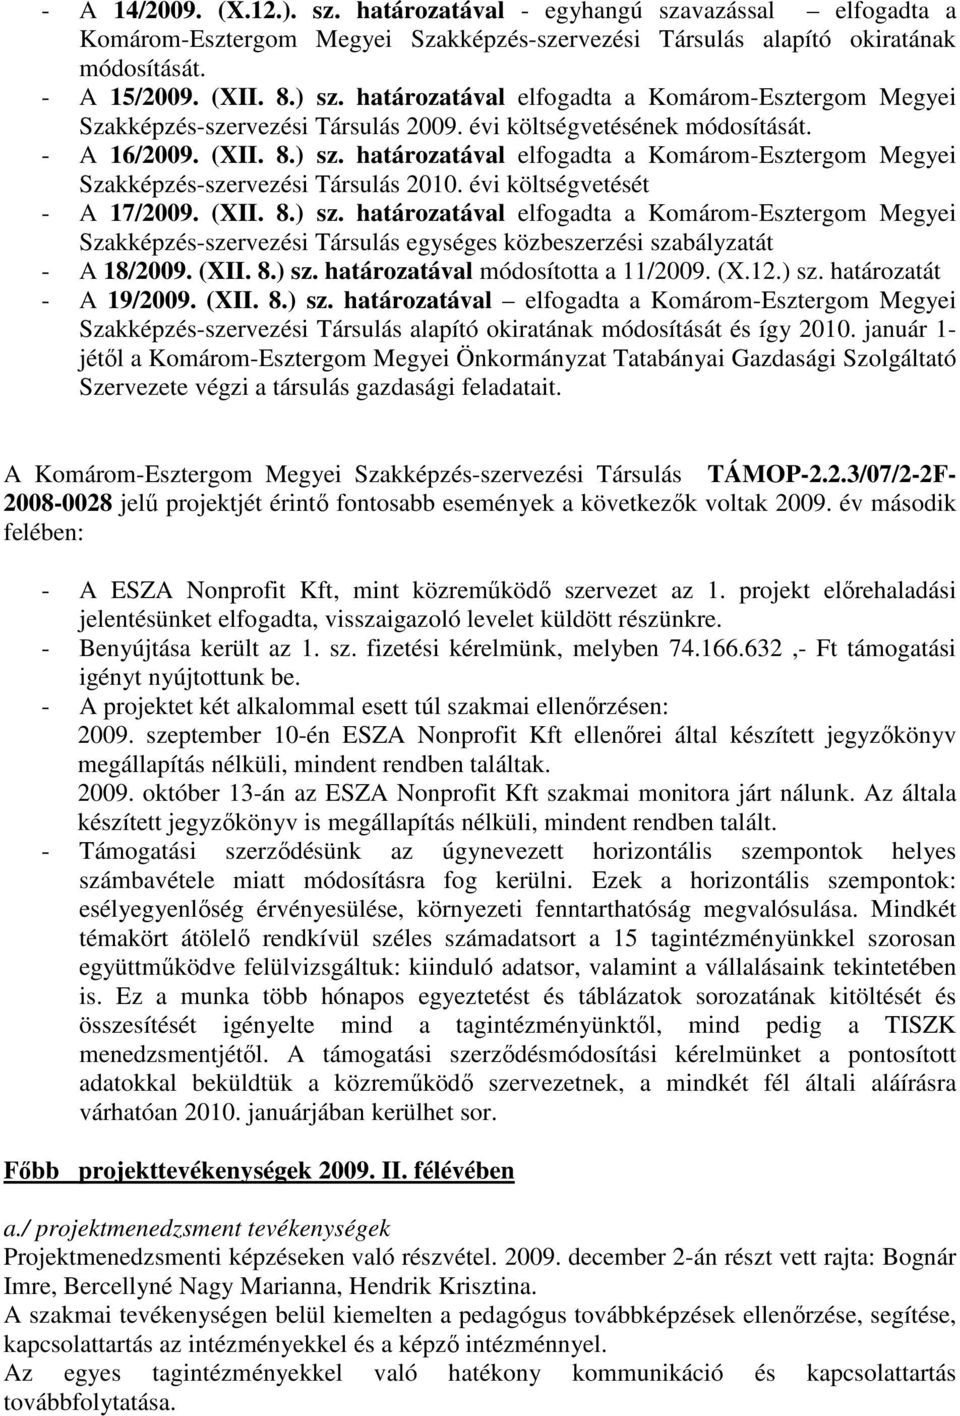 határozatával elfogadta a Komárom-Esztergom Megyei Szakképzés-szervezési Társulás 2010. évi költségvetését - A 17/2009. (XII. 8.) sz.